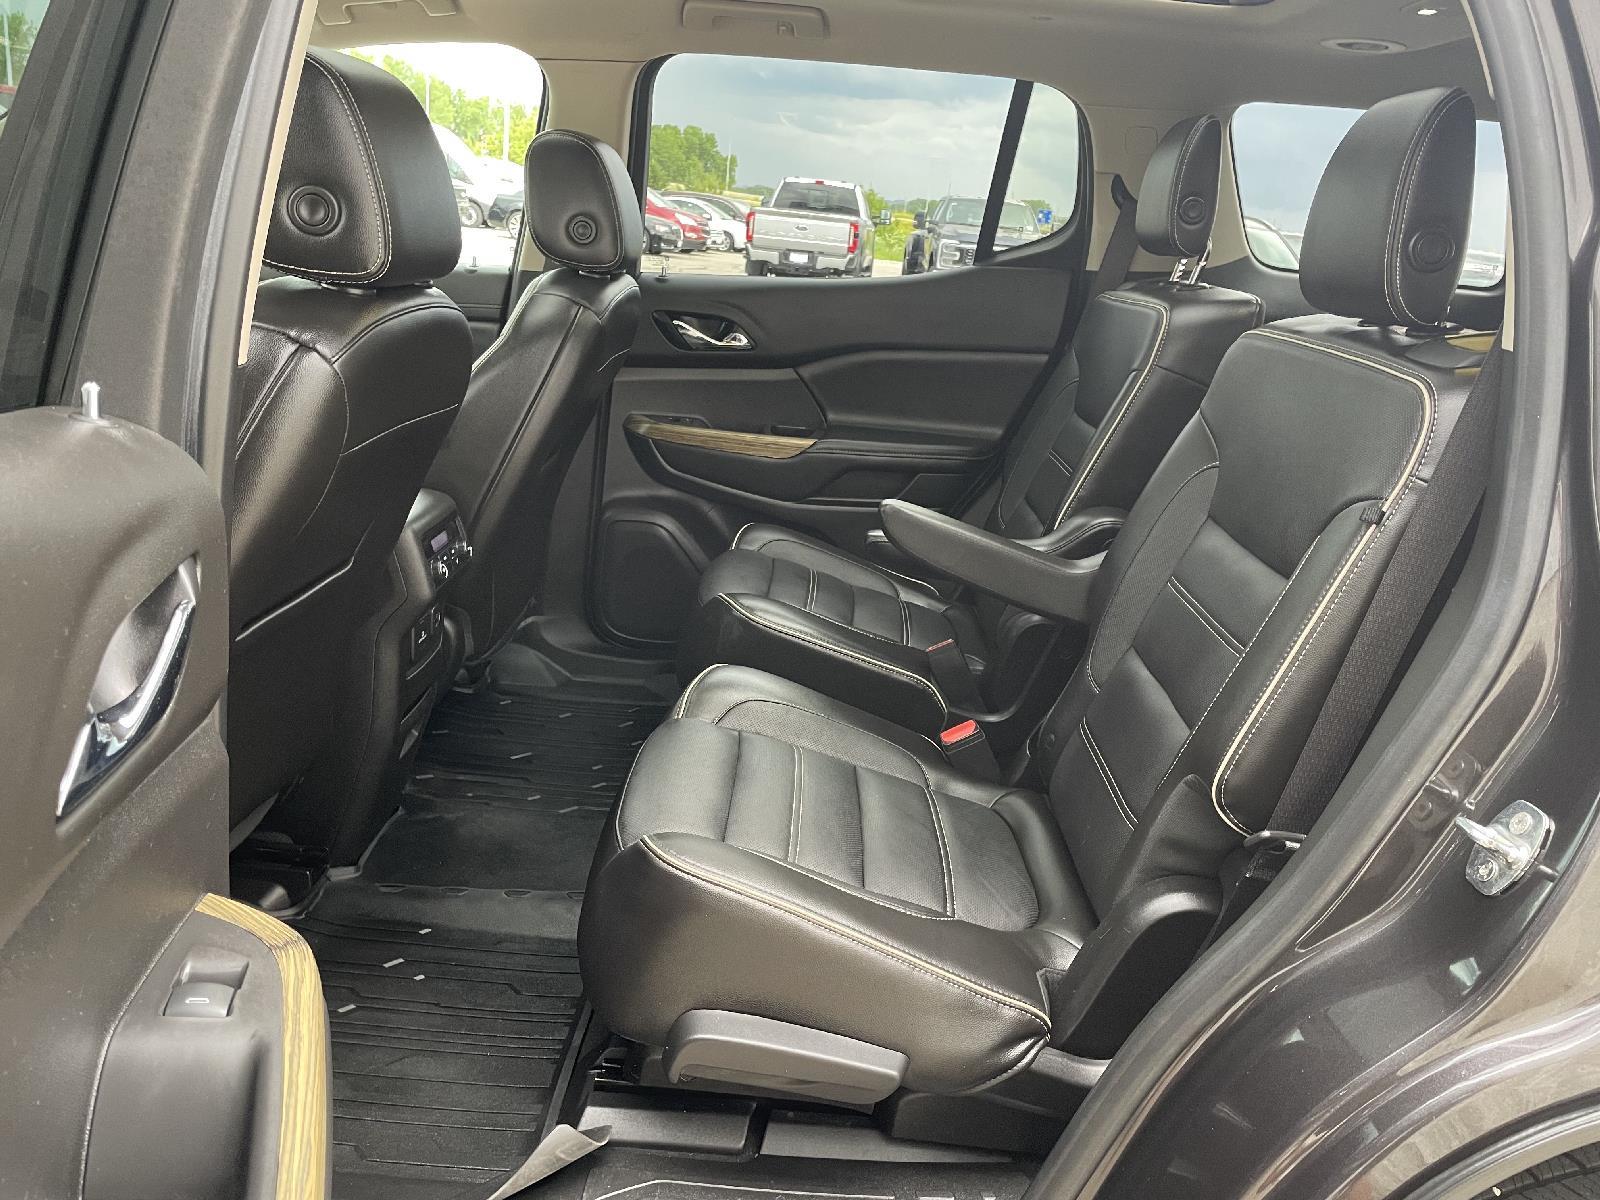 Used 2019 GMC Acadia Denali 4 door for sale in Lincoln NE